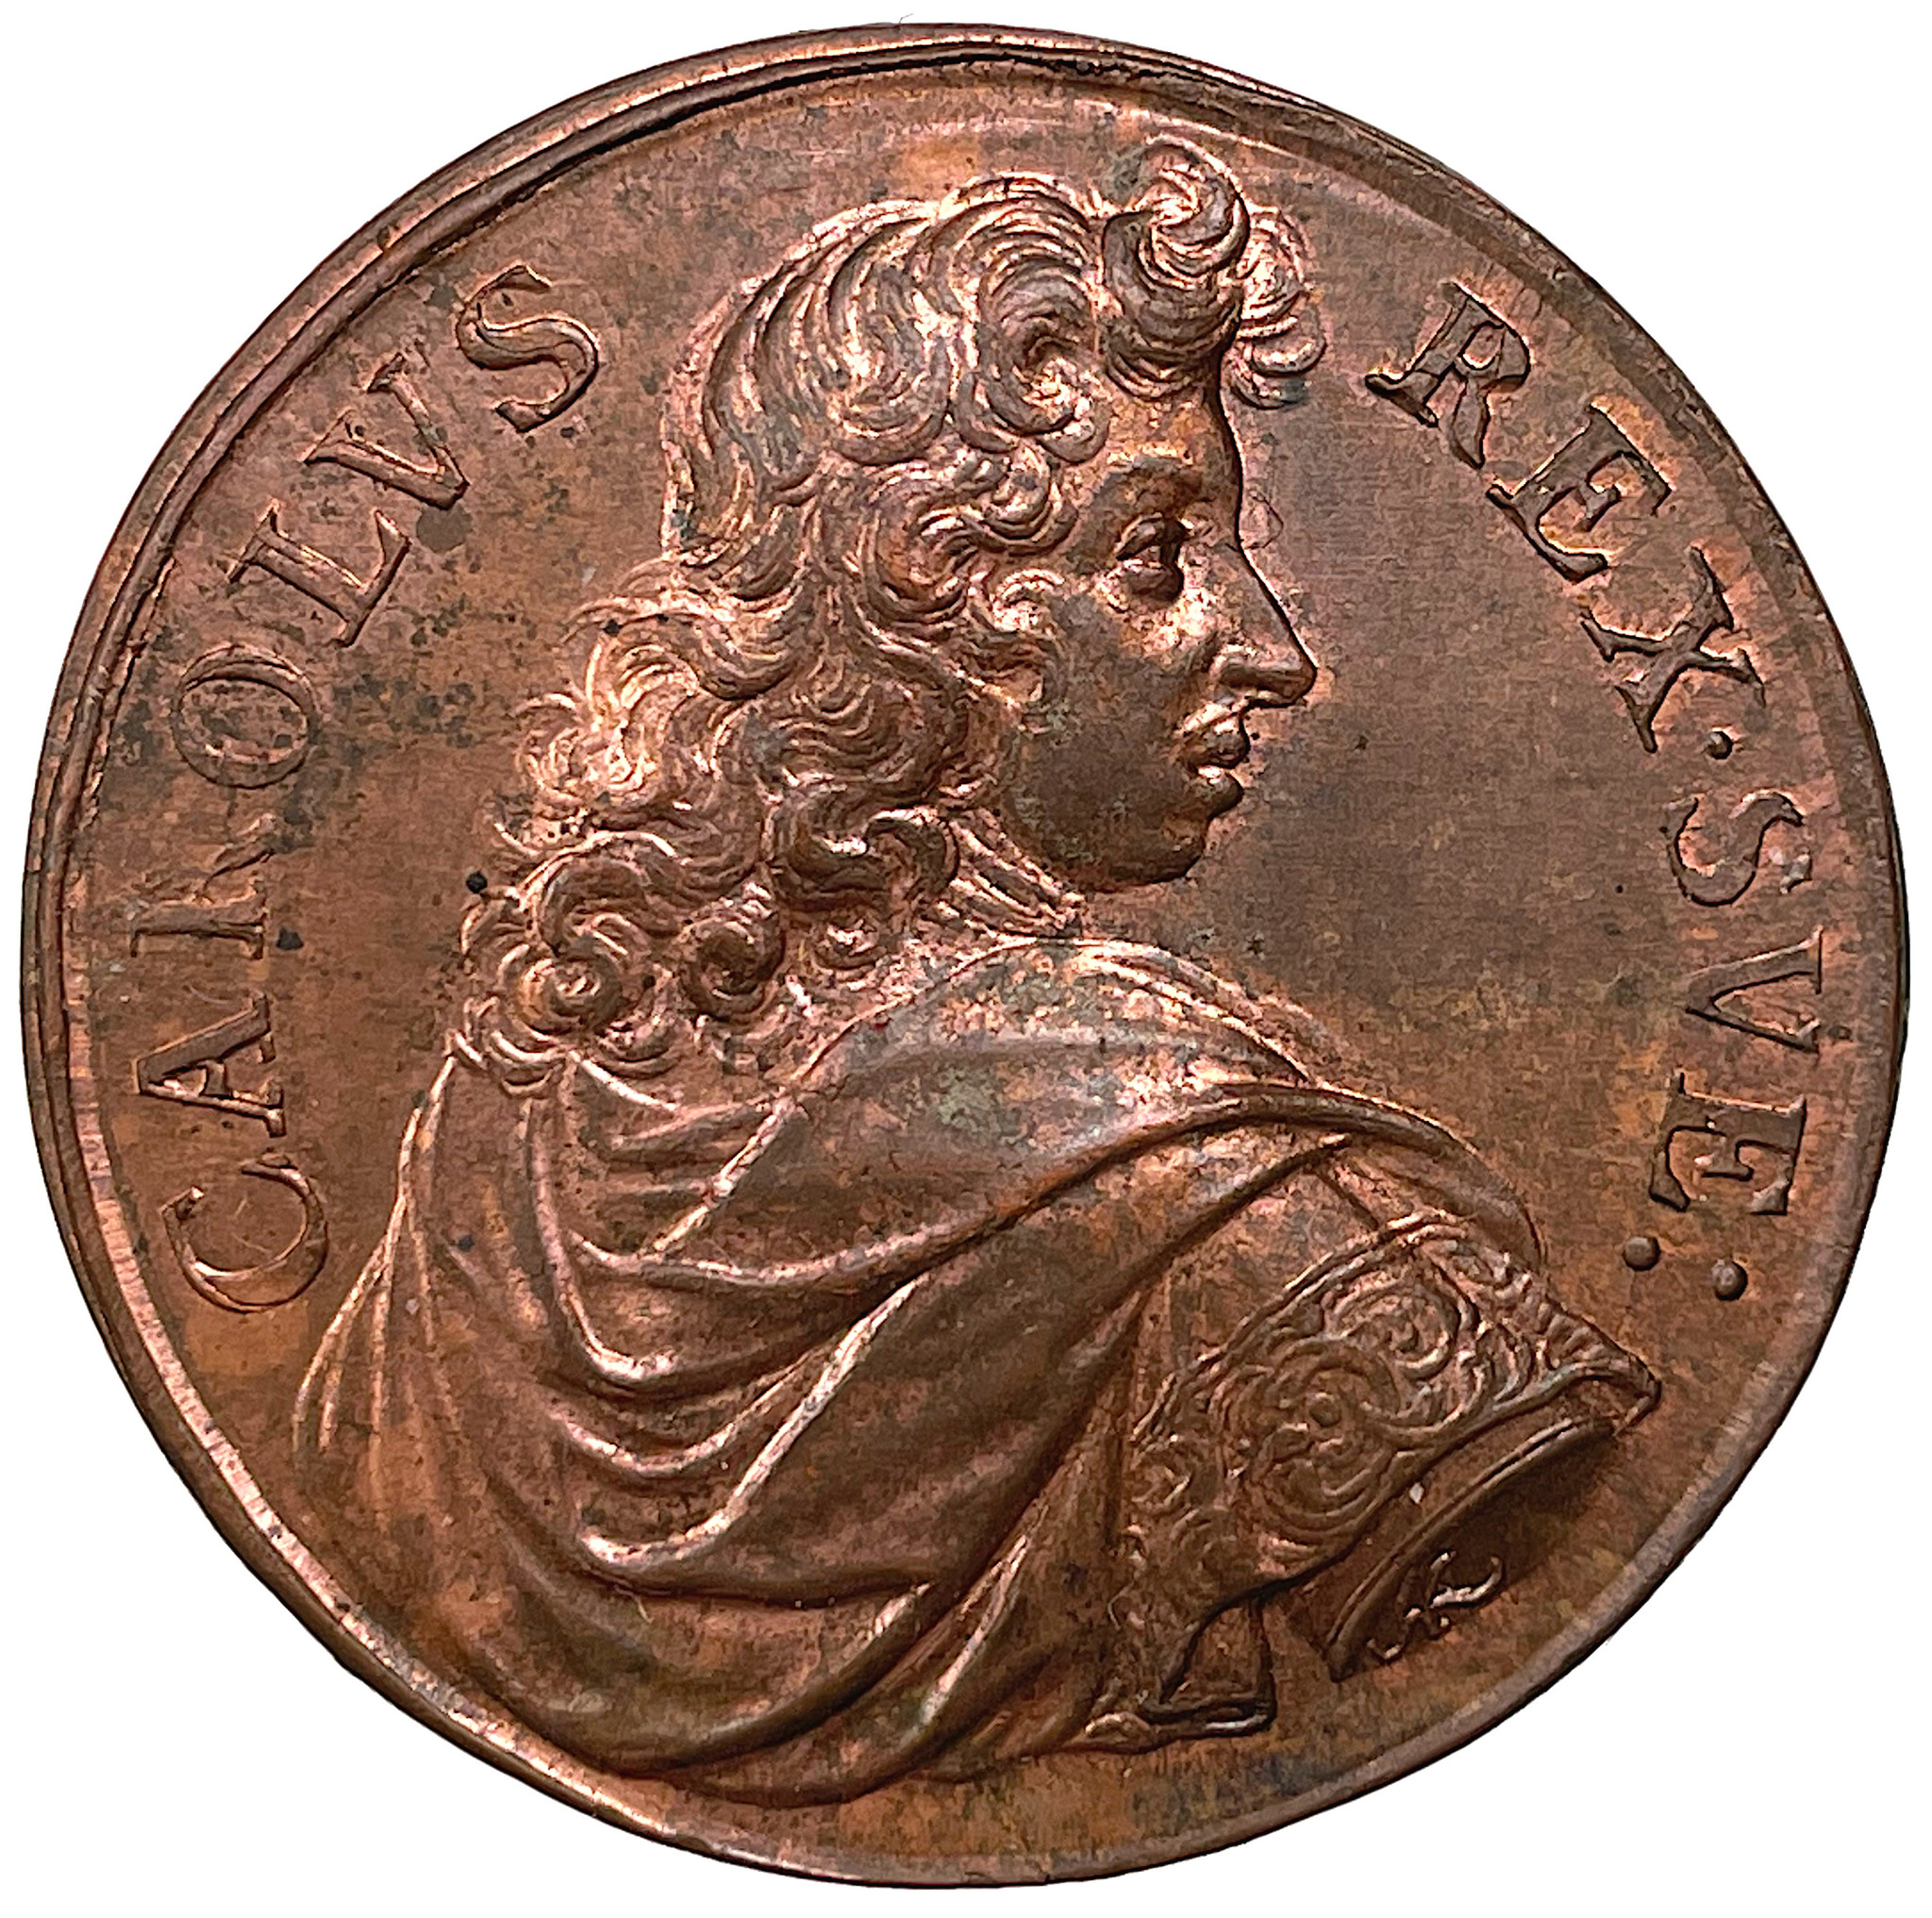 Karl XI 1679 - Sveriges ära och lycka återställd ett underbart toppexemplar i helt röd färg av Arvid Karlsteen